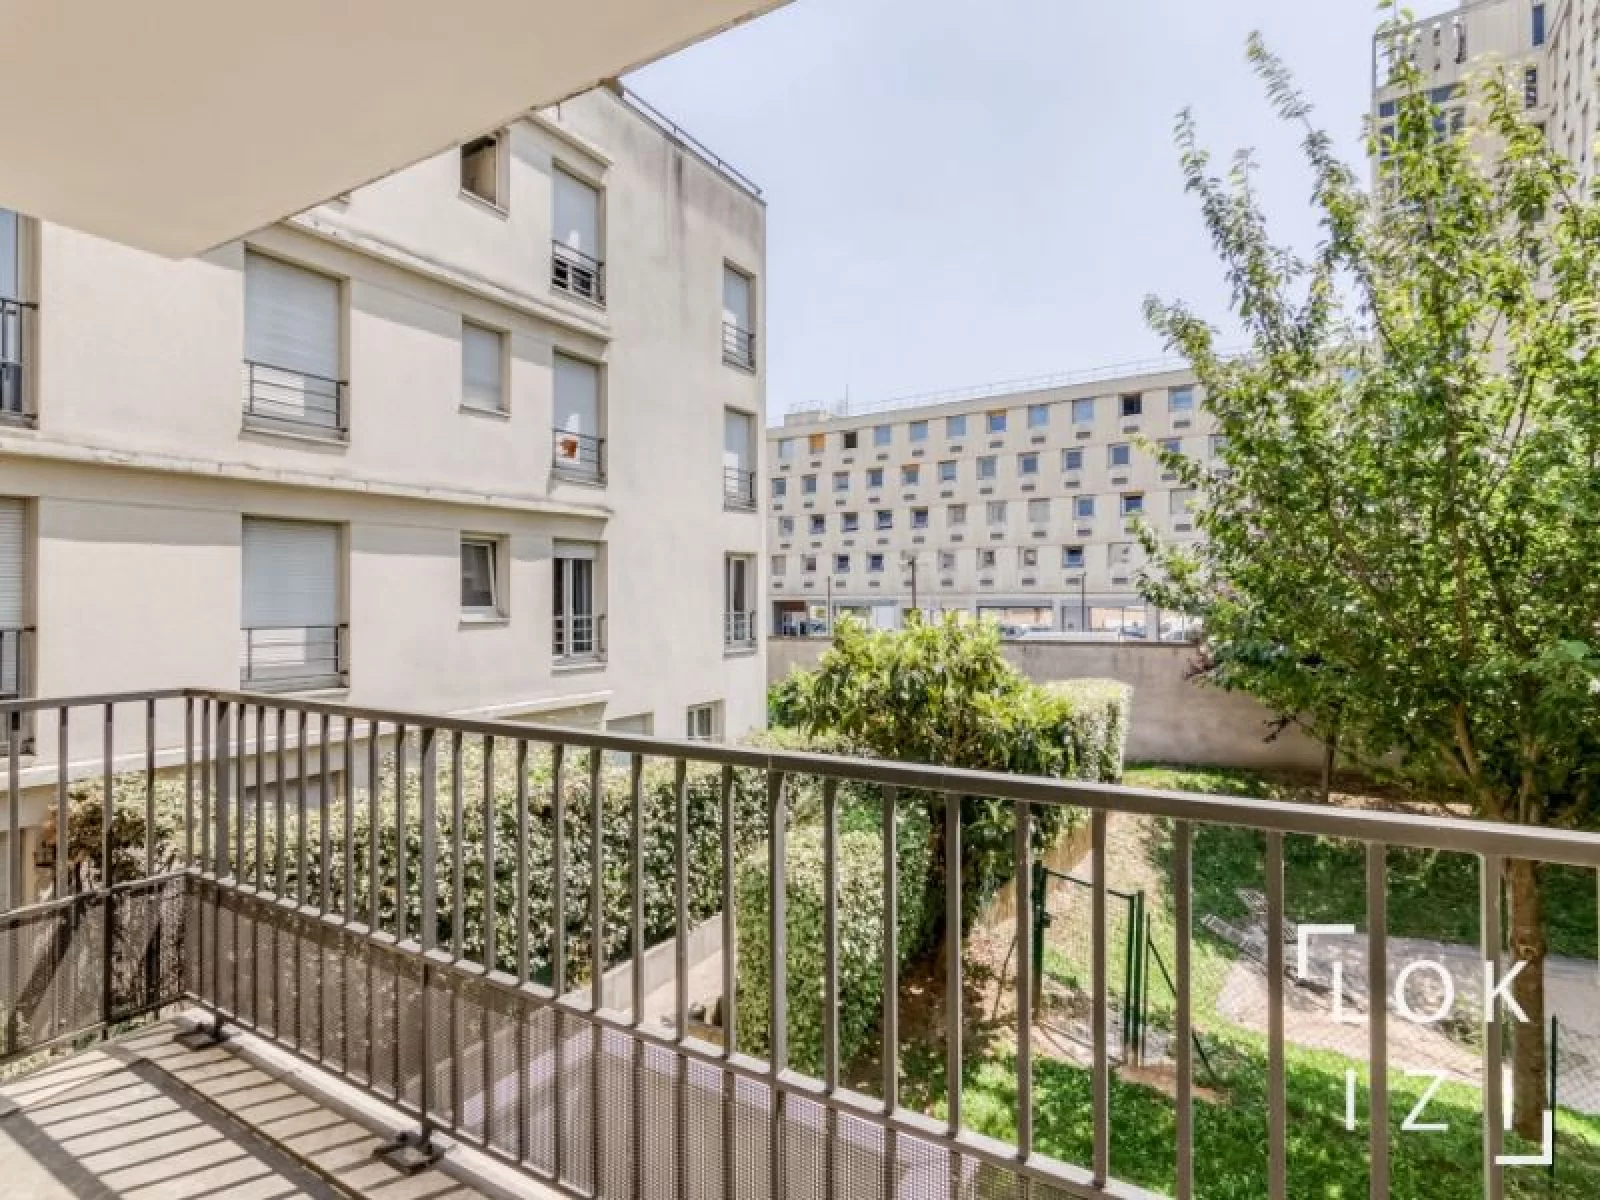 Location appartement meublé 2 pièces 47m² (Paris - St Ouen 93)